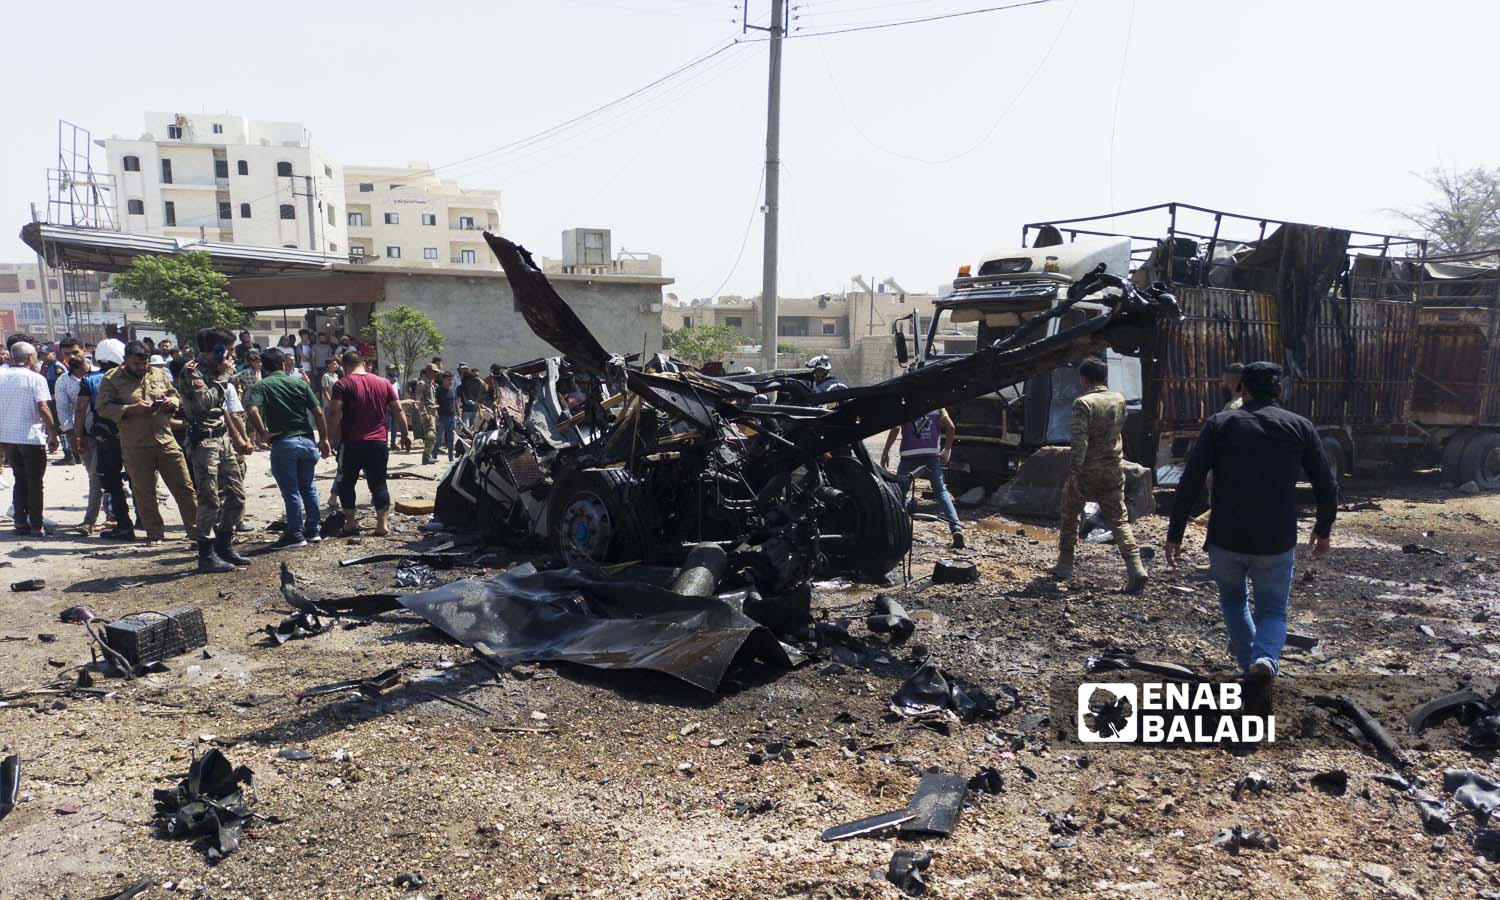  تفجير شاحنة تجارية في مدخل اعزاز الغربي في ريف حلب -23 آب 2021(عنب بلدي /وليد عثمان)